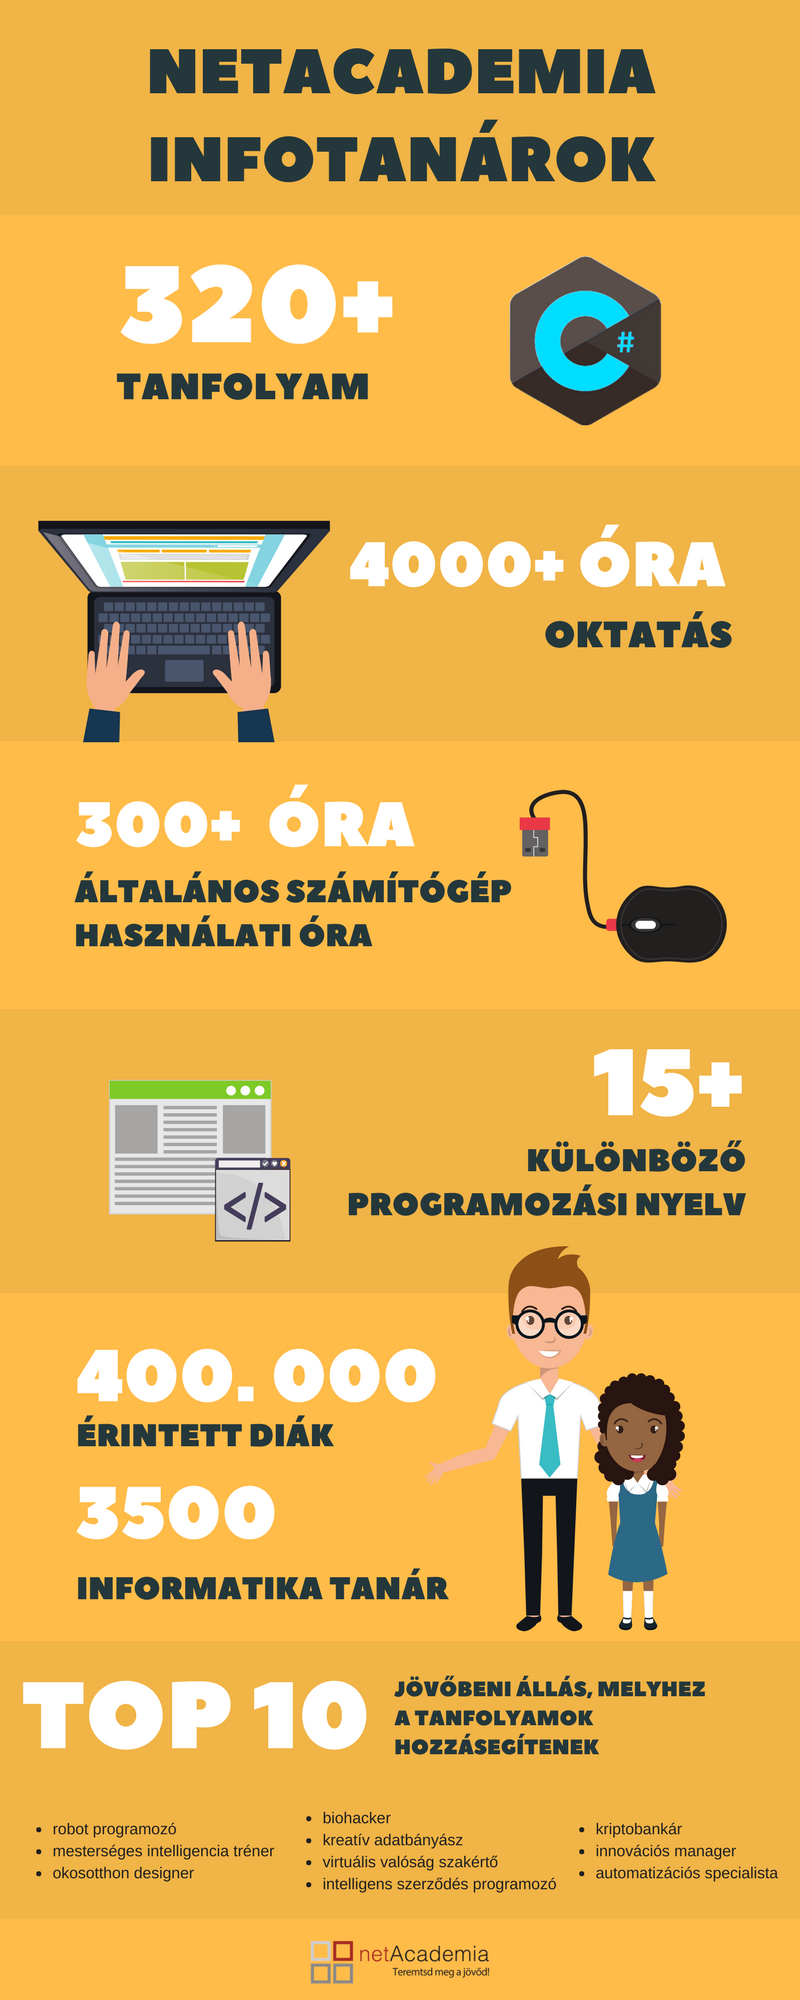 infotanar-infografika-new.png